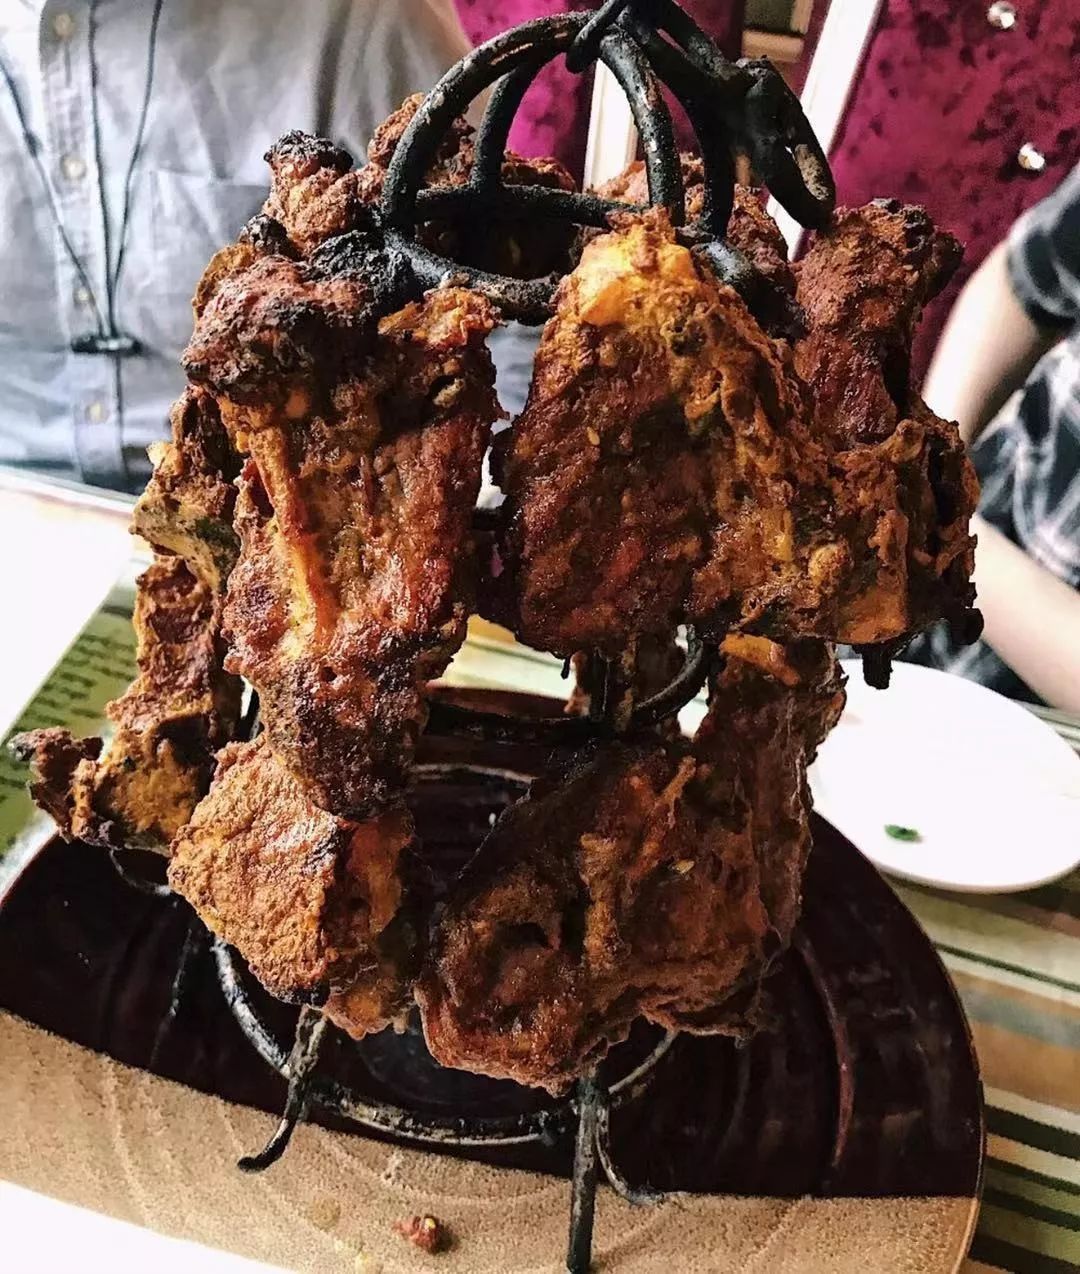 馕包肉、油塔子、 米肠子、面肺子……新疆就是主食的天堂呀！！